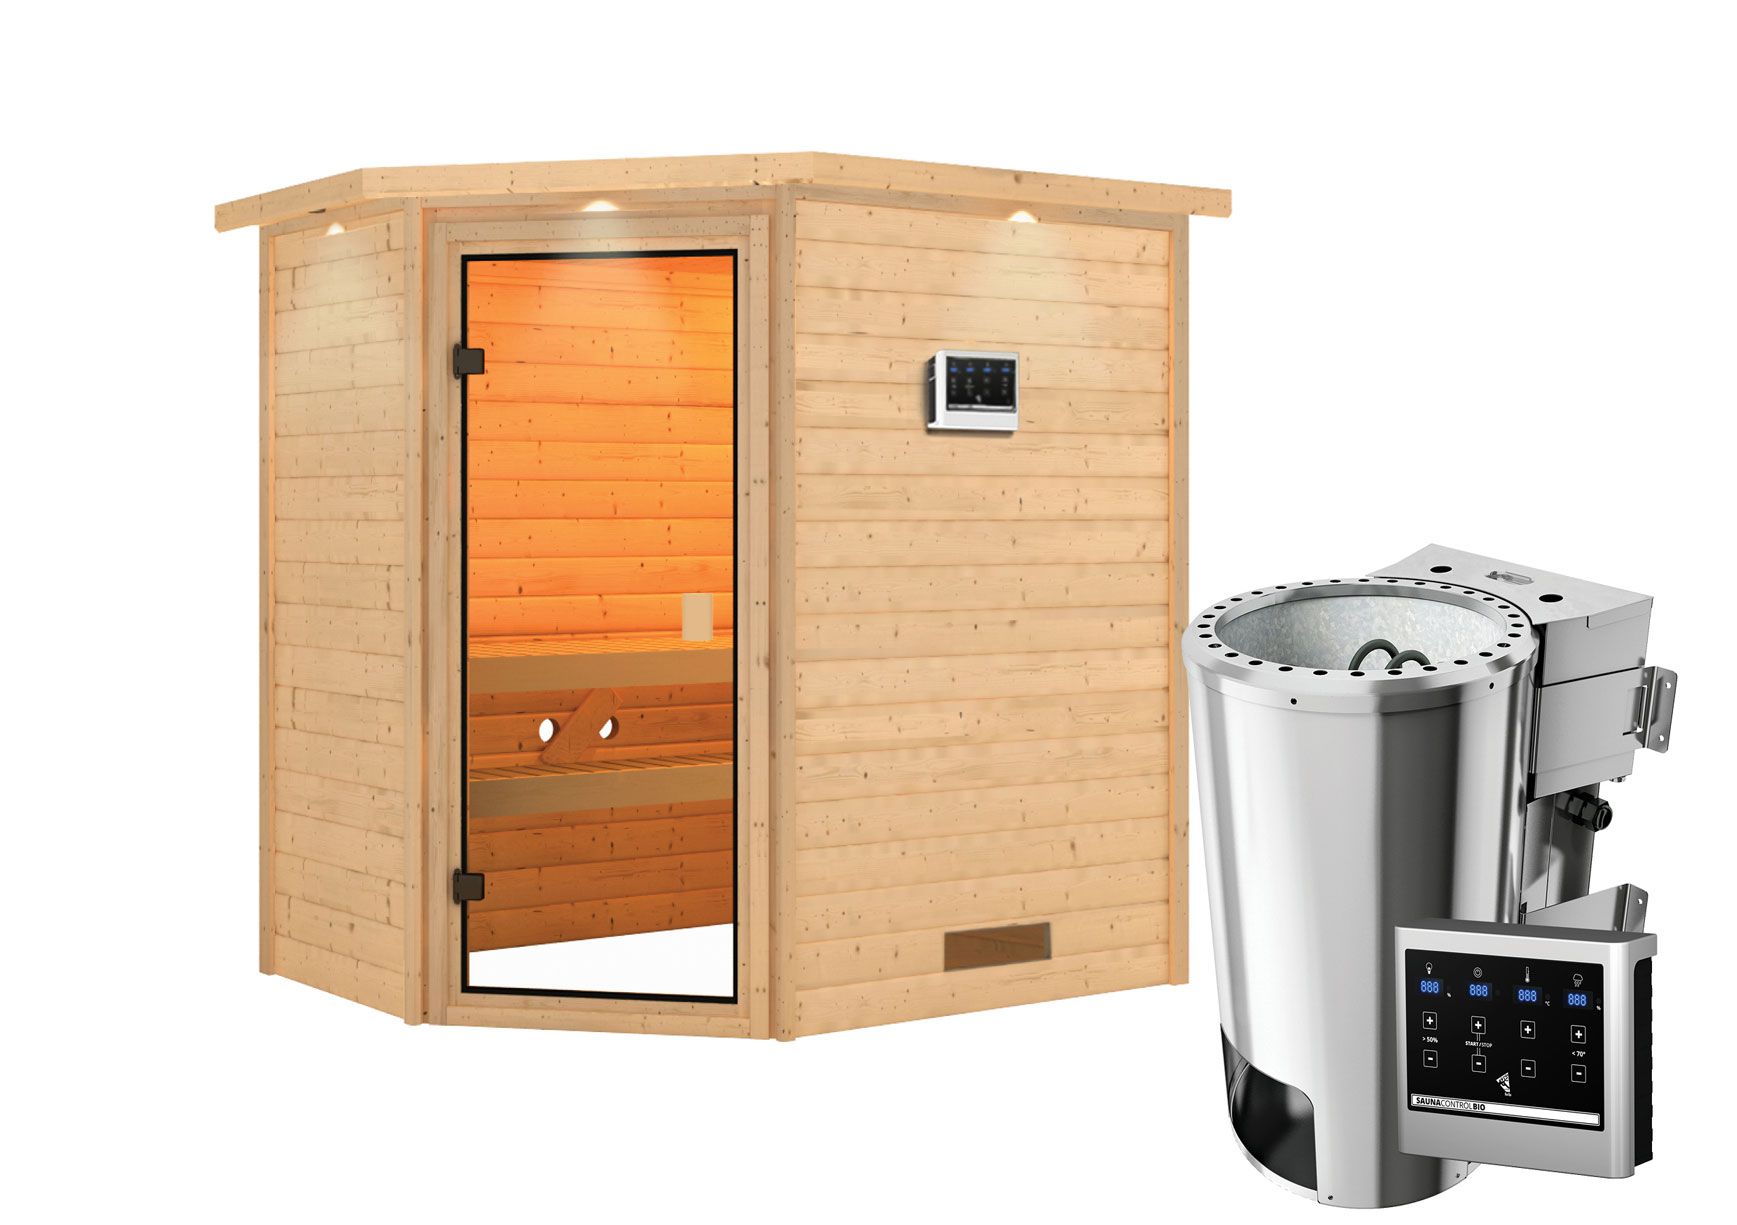 Sauna "Njal" SET mit bronzierter Tür und Kranz - Farbe: Natur, Ofen BIO 3,6 kW - 223 x 159 x 191 cm (B x T x H)